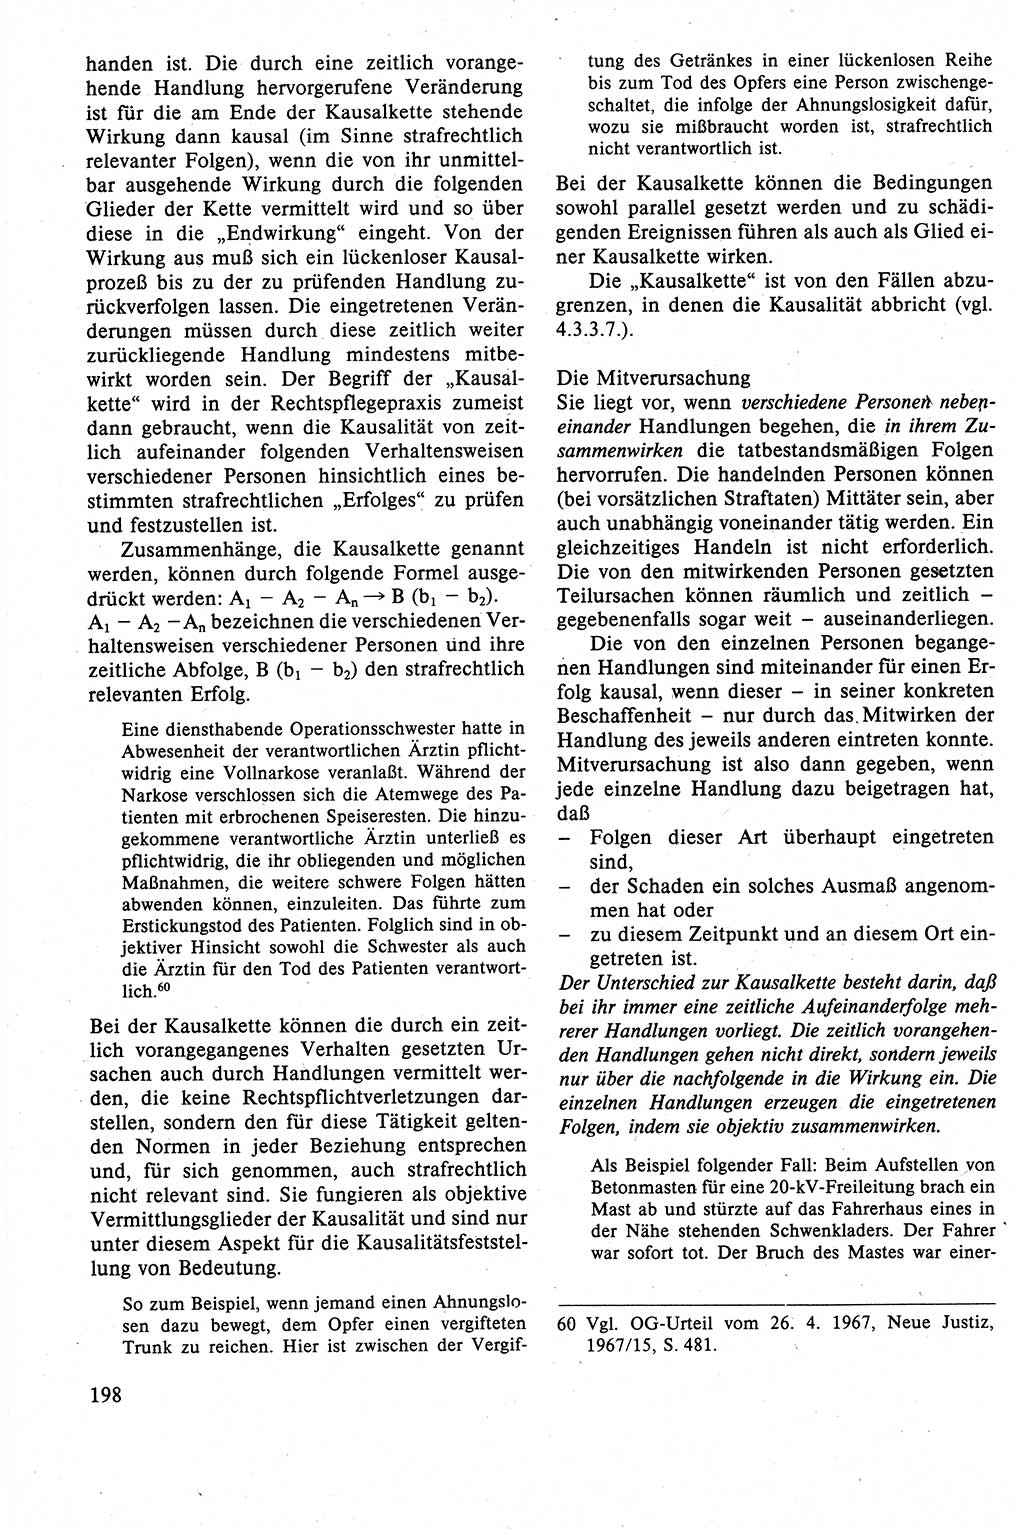 Strafrecht der DDR (Deutsche Demokratische Republik), Lehrbuch 1988, Seite 198 (Strafr. DDR Lb. 1988, S. 198)